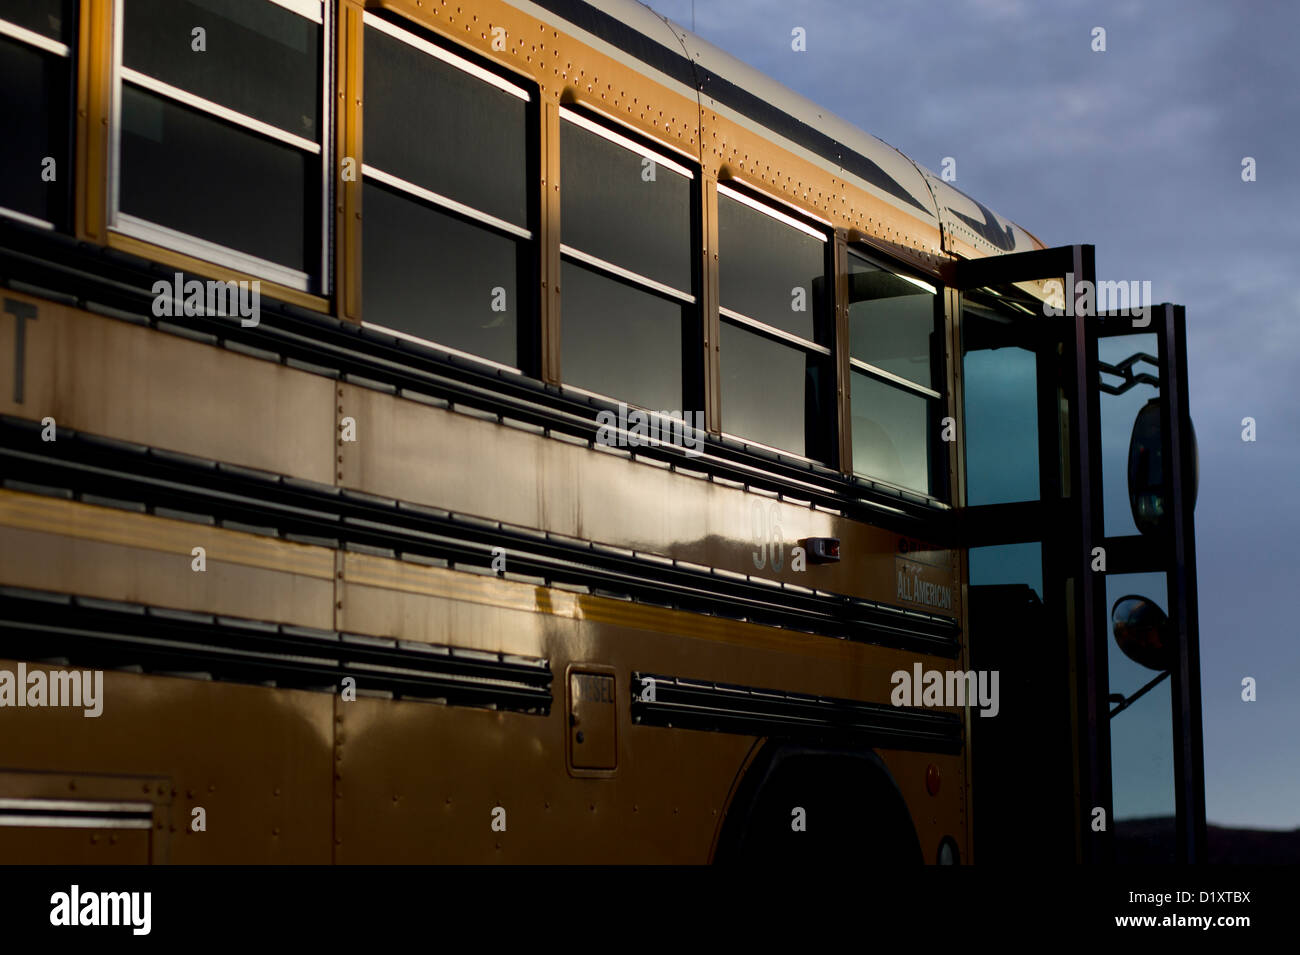 American yellow school bus with open doors Stock Photo